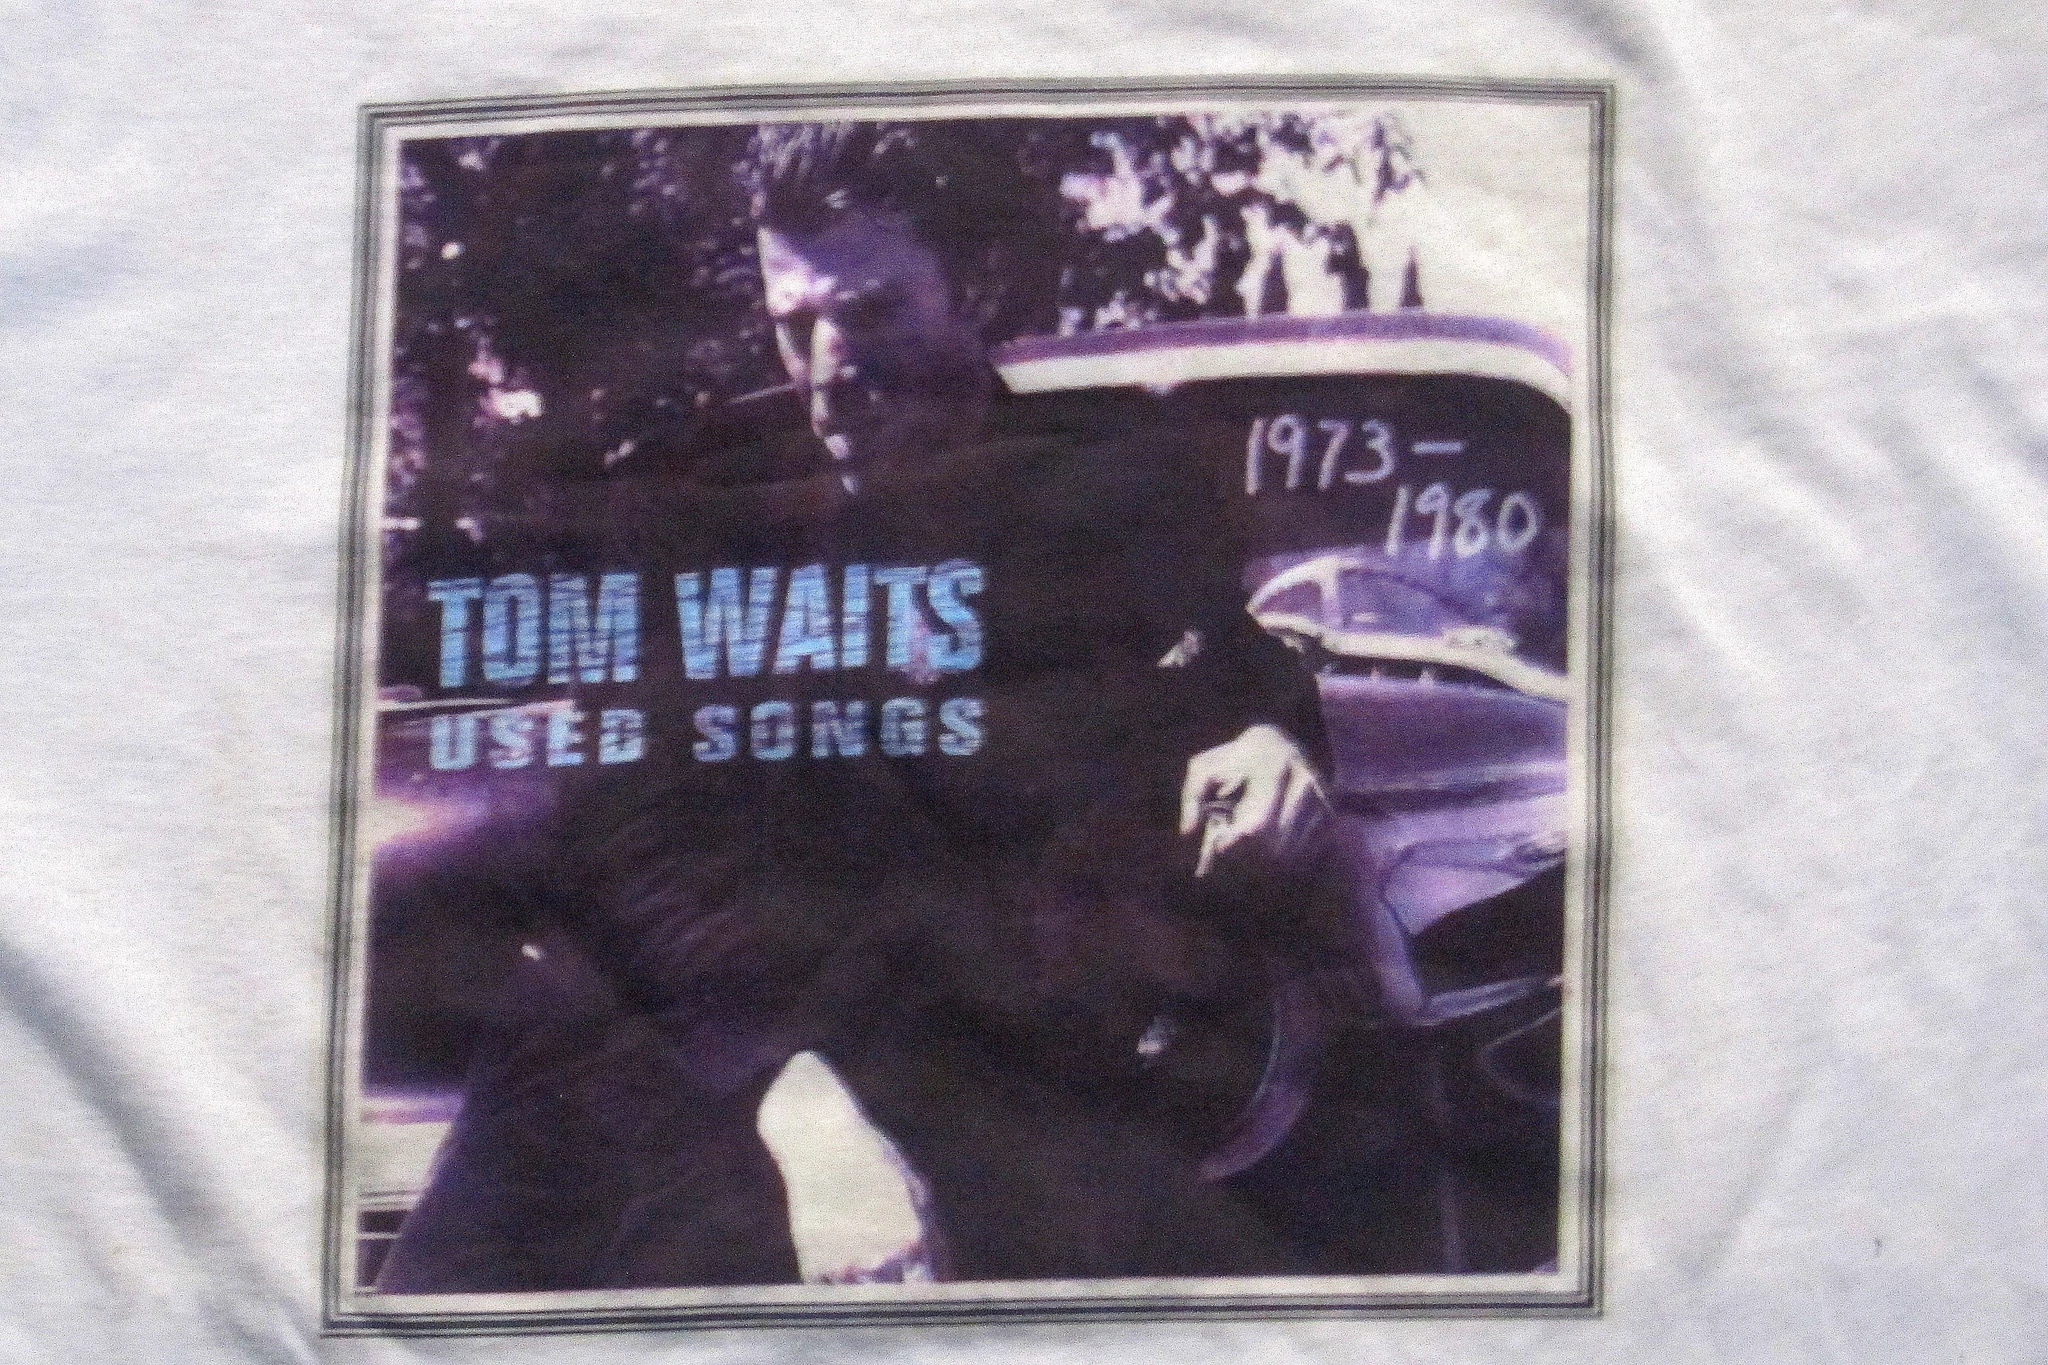 TOM WAITS- Used Songs - T-SHIRT